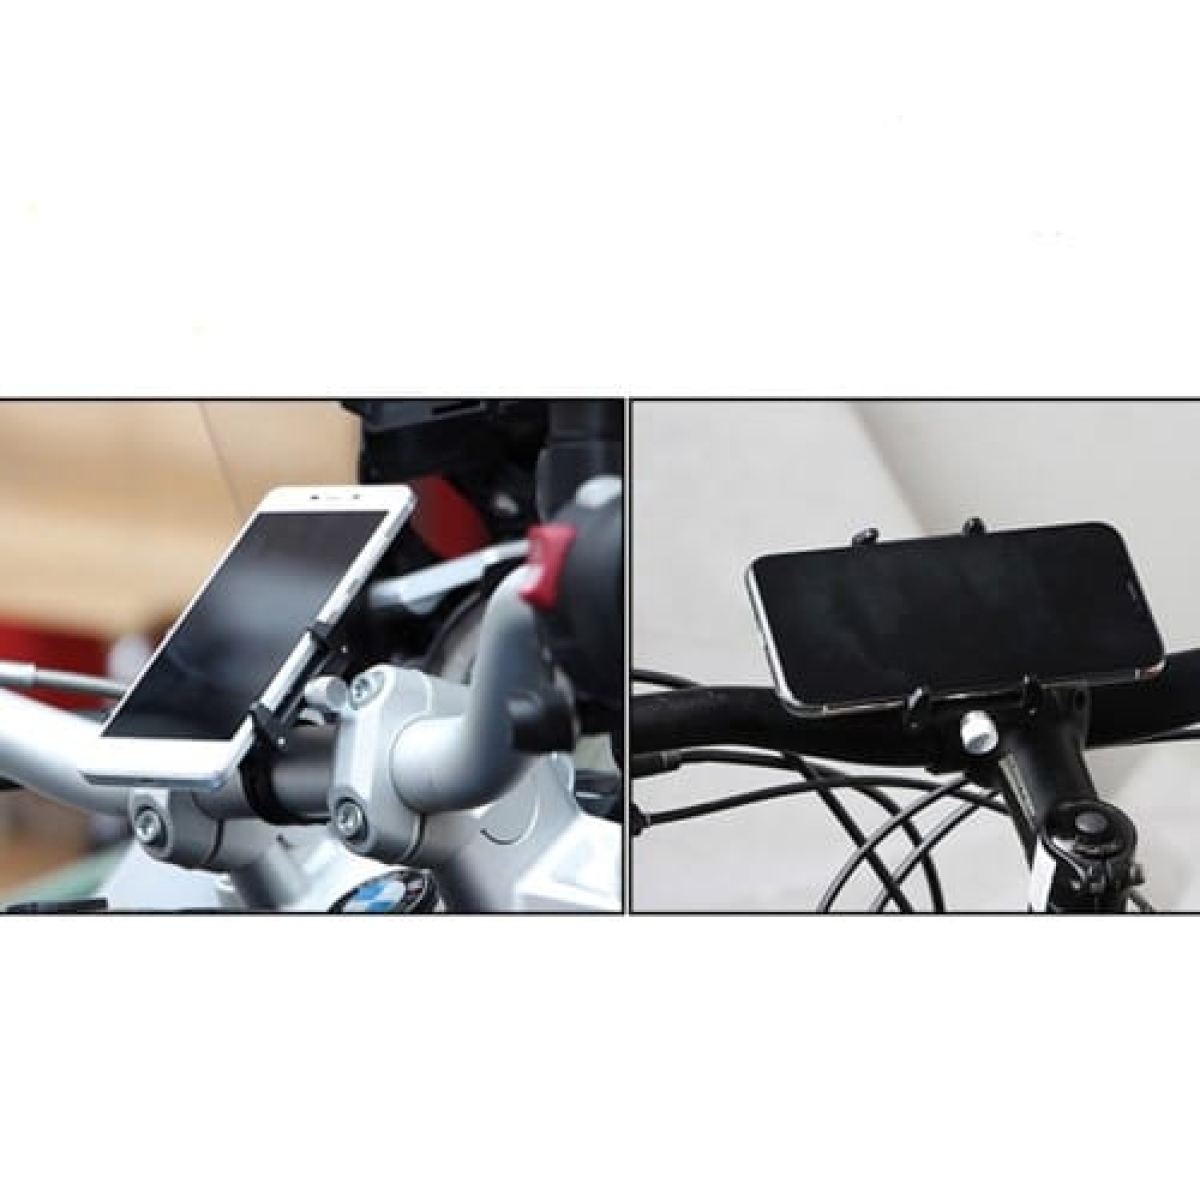 Βάση κινητού τηλεφώνου αλουμινίου GUB Pro 1 AT759 50-100mm για ηλεκτρικό σκούτερ ή ποδηλάτου μαύρη